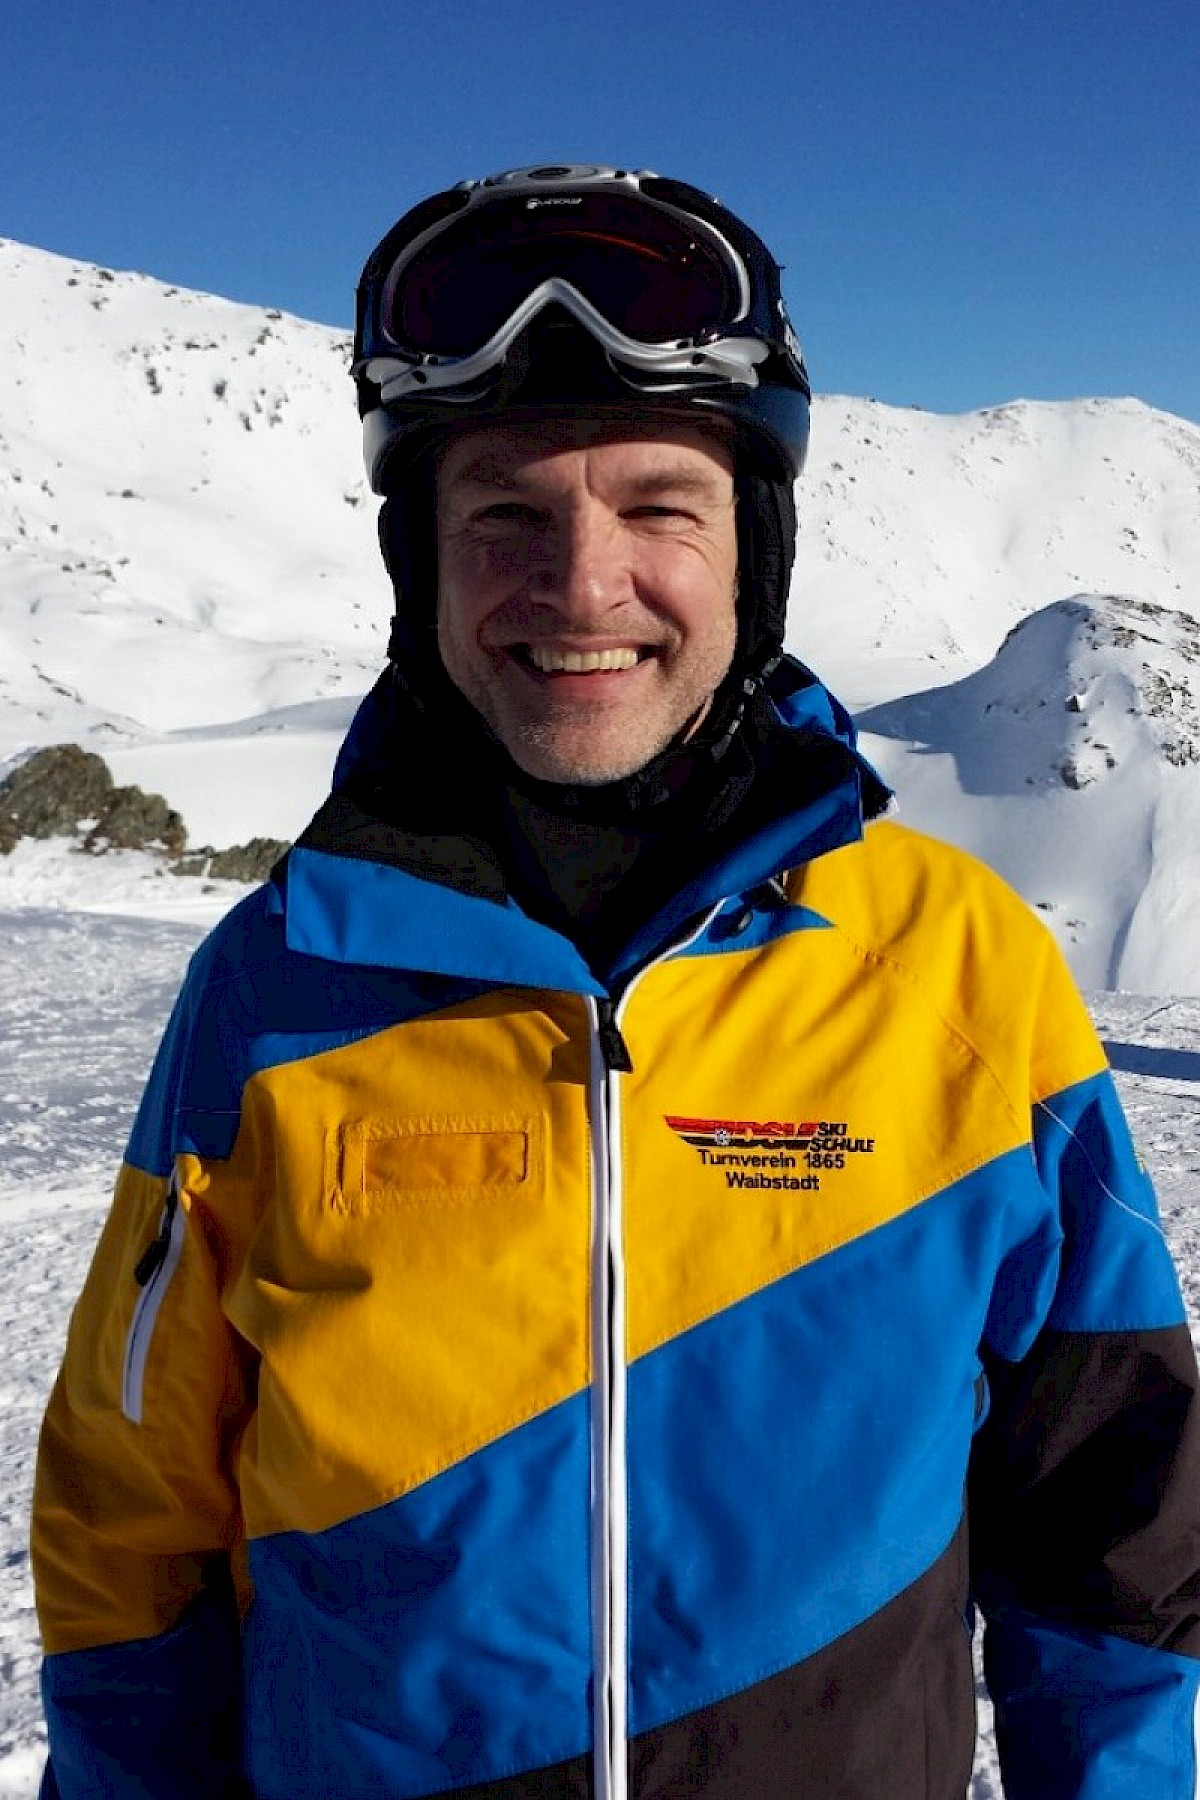 Manfred Leutz, Instructor Alpin